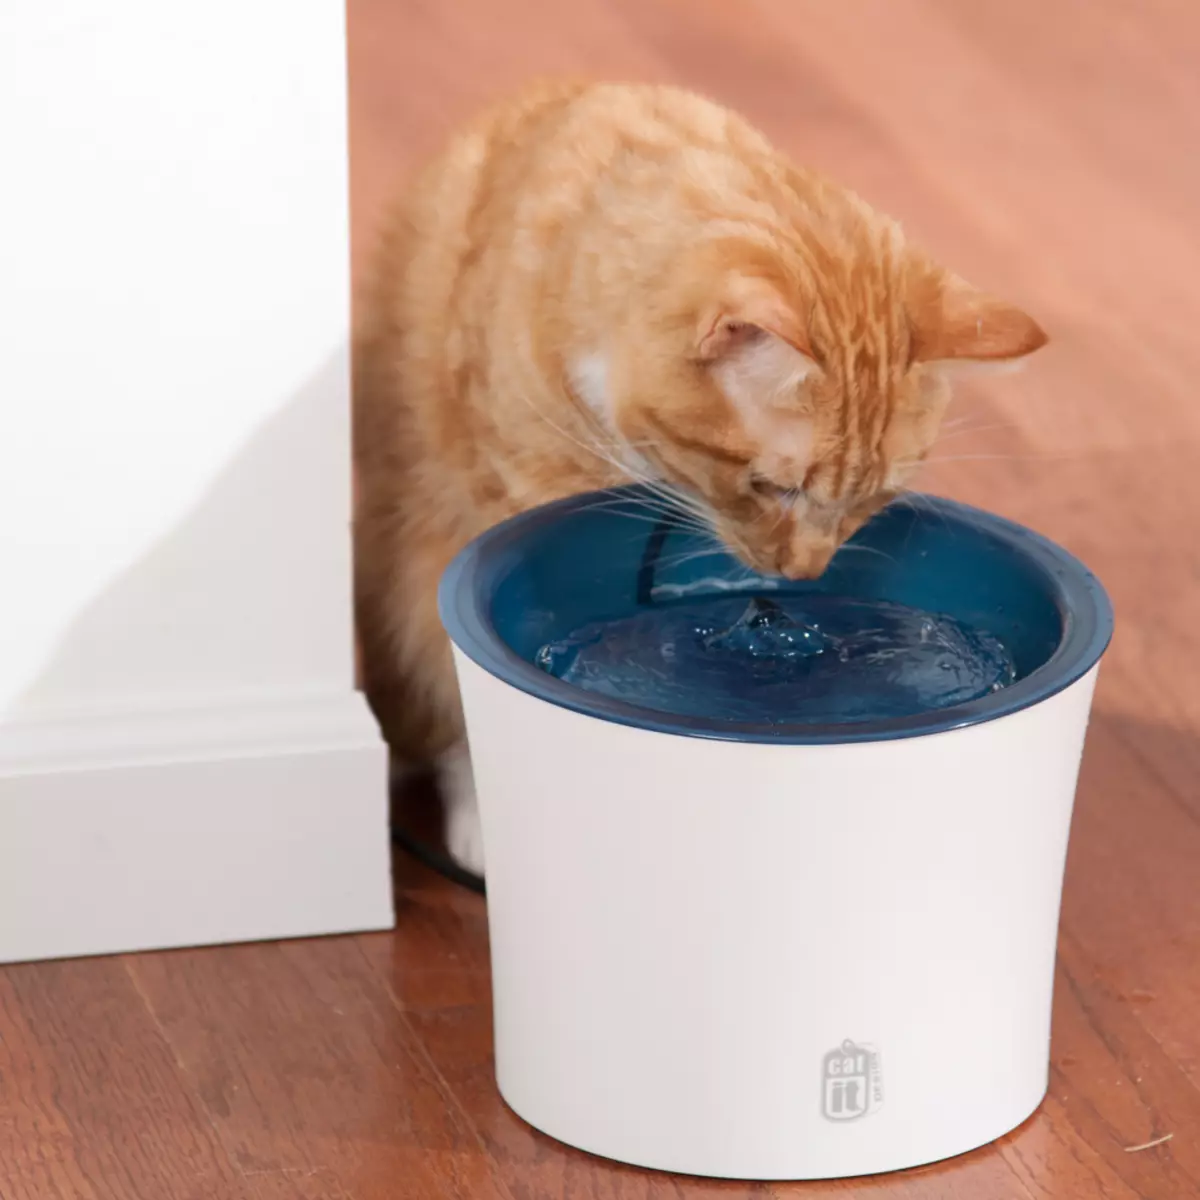 Мачји јахач: Аутоматска фонтана за пиће за мачку. Како научити питку воду за пиће из посуде или аутоматског аутомобила? 11892_43